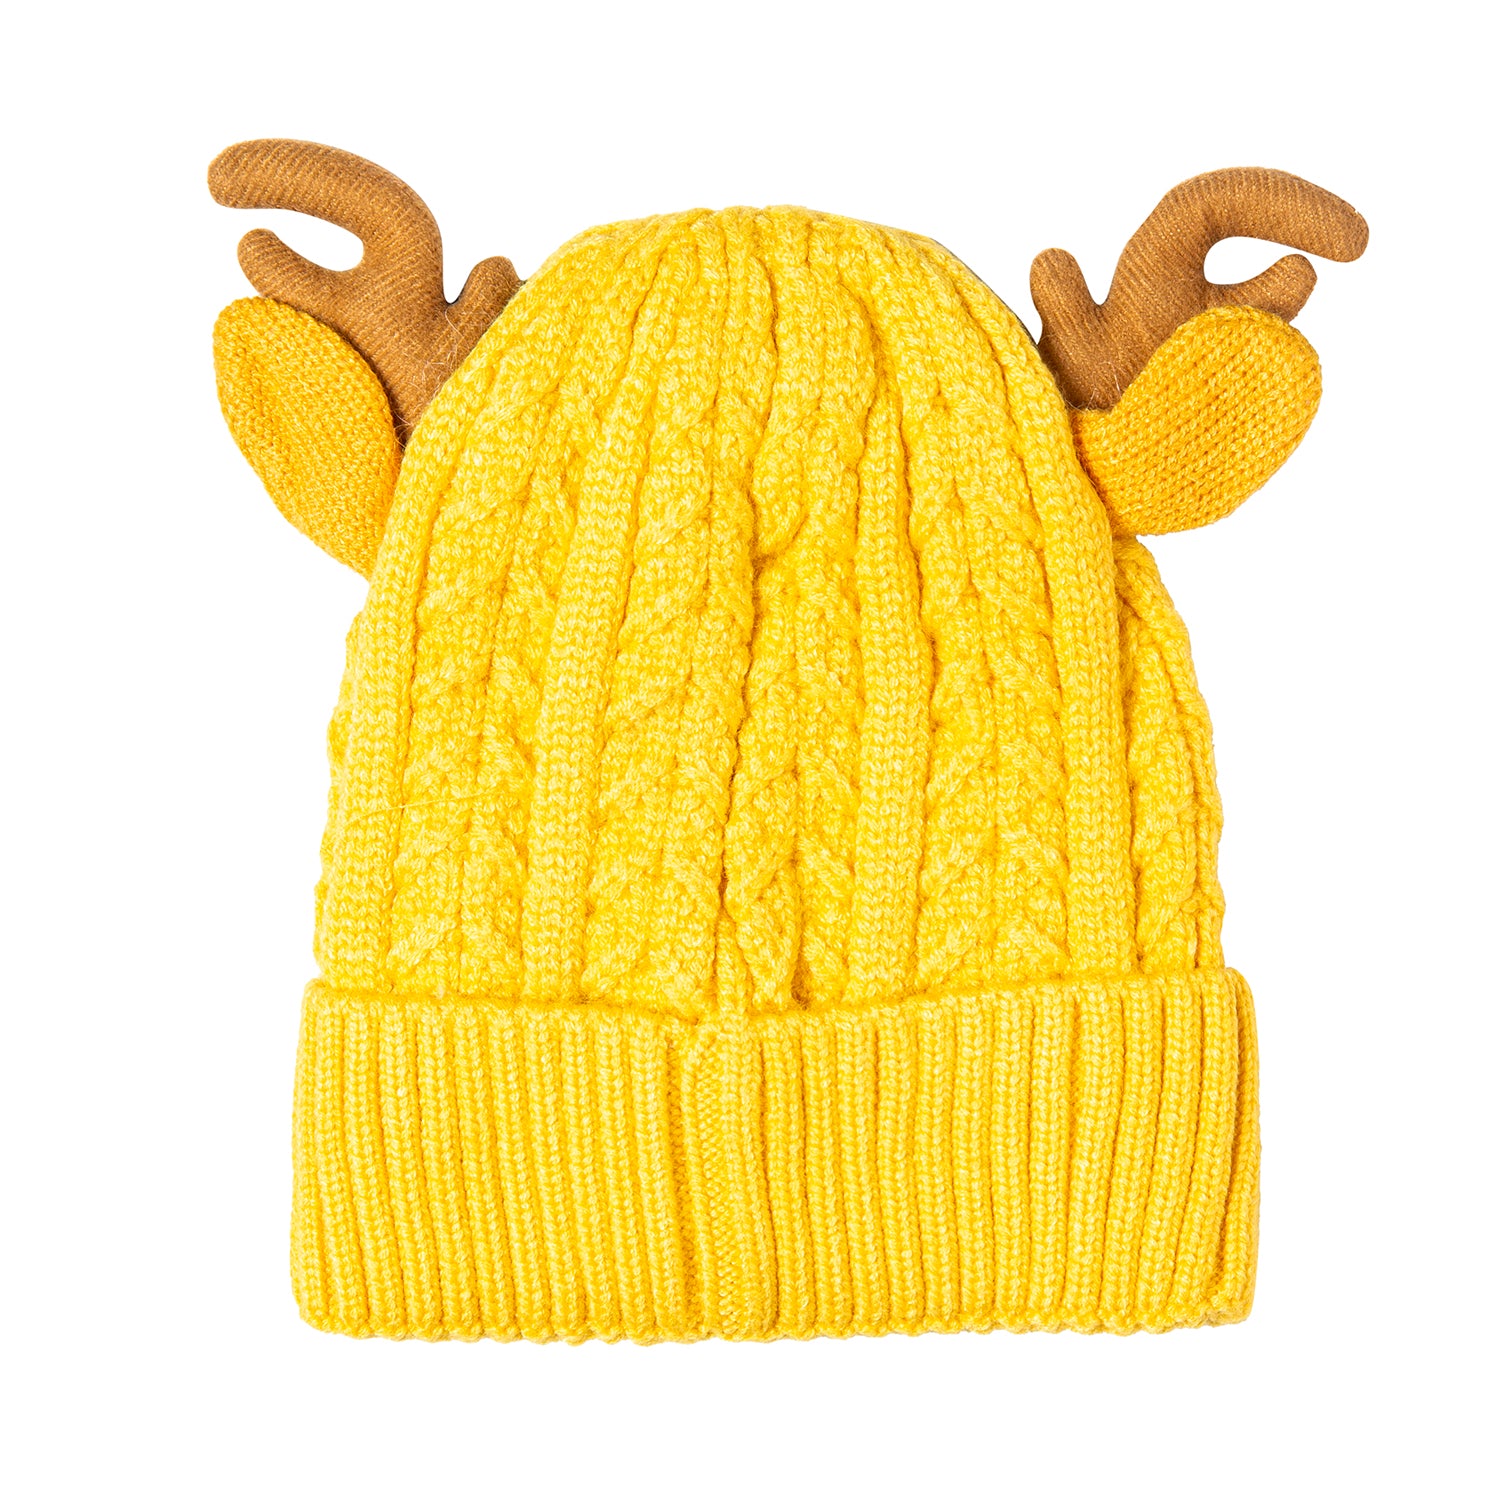 Knit Woollen Cap 3D Alphabet Antler Yellow - Baby Moo